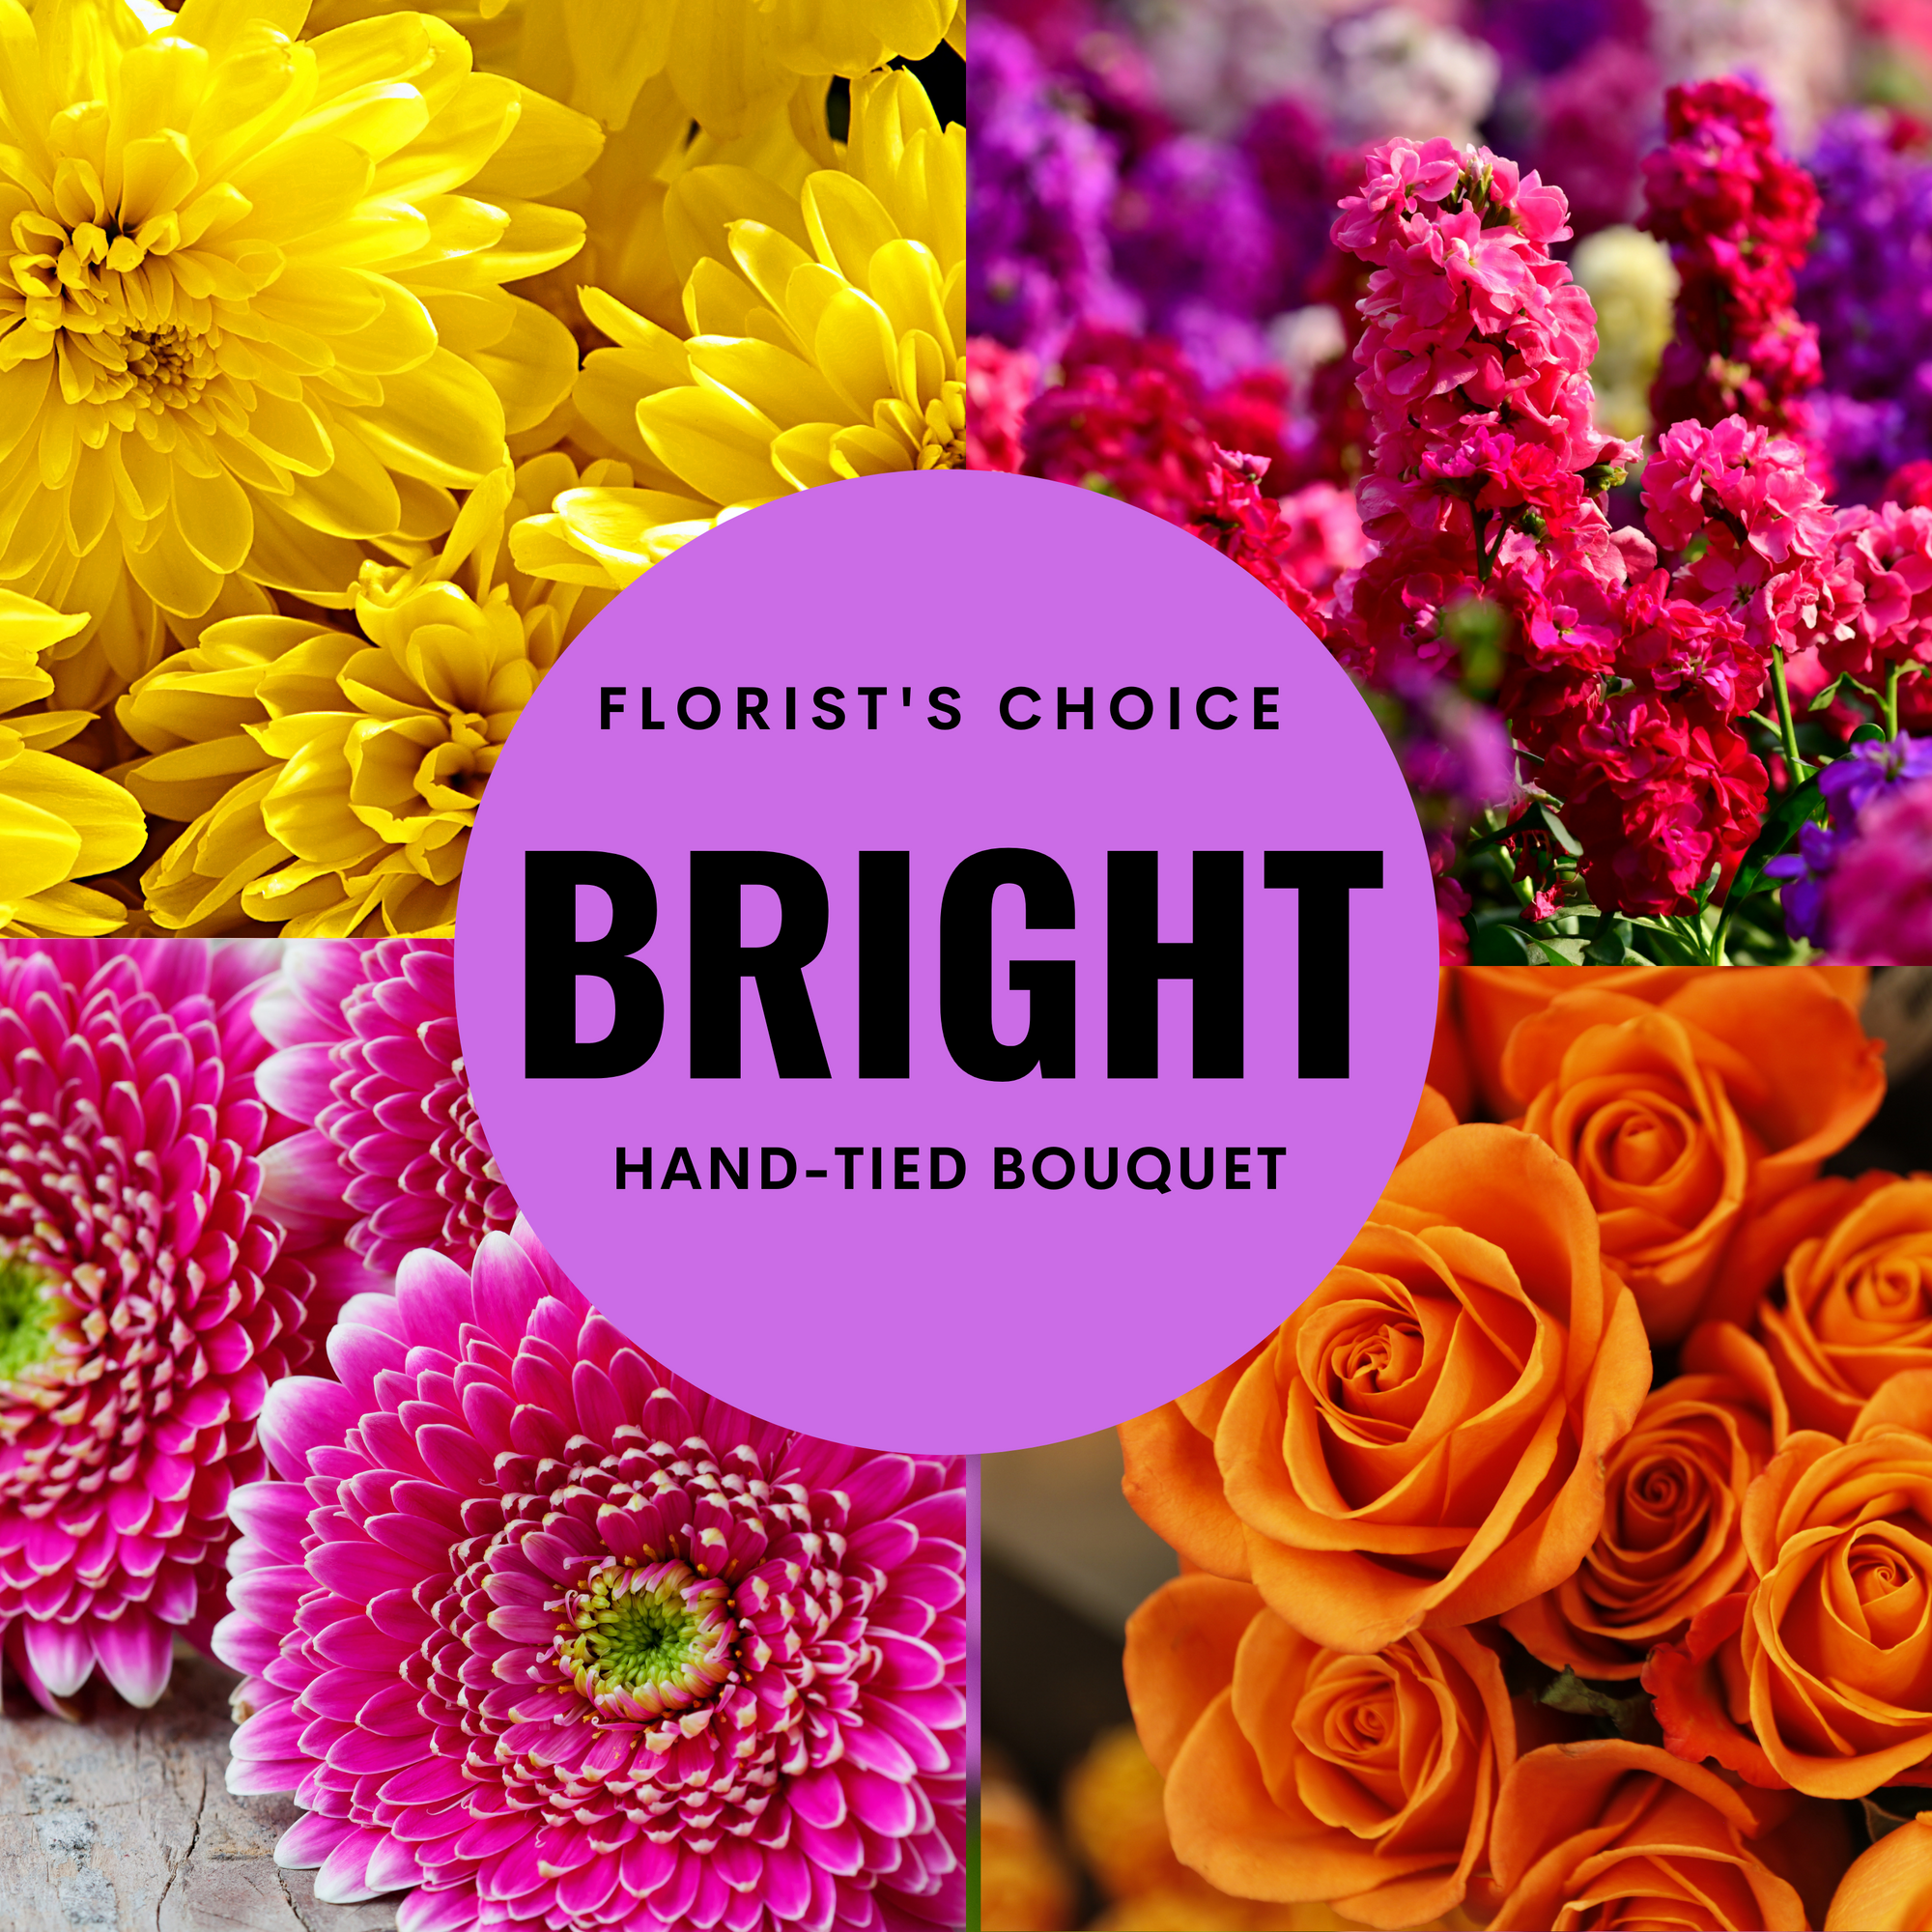 Florist's Choice Bright Bouquet